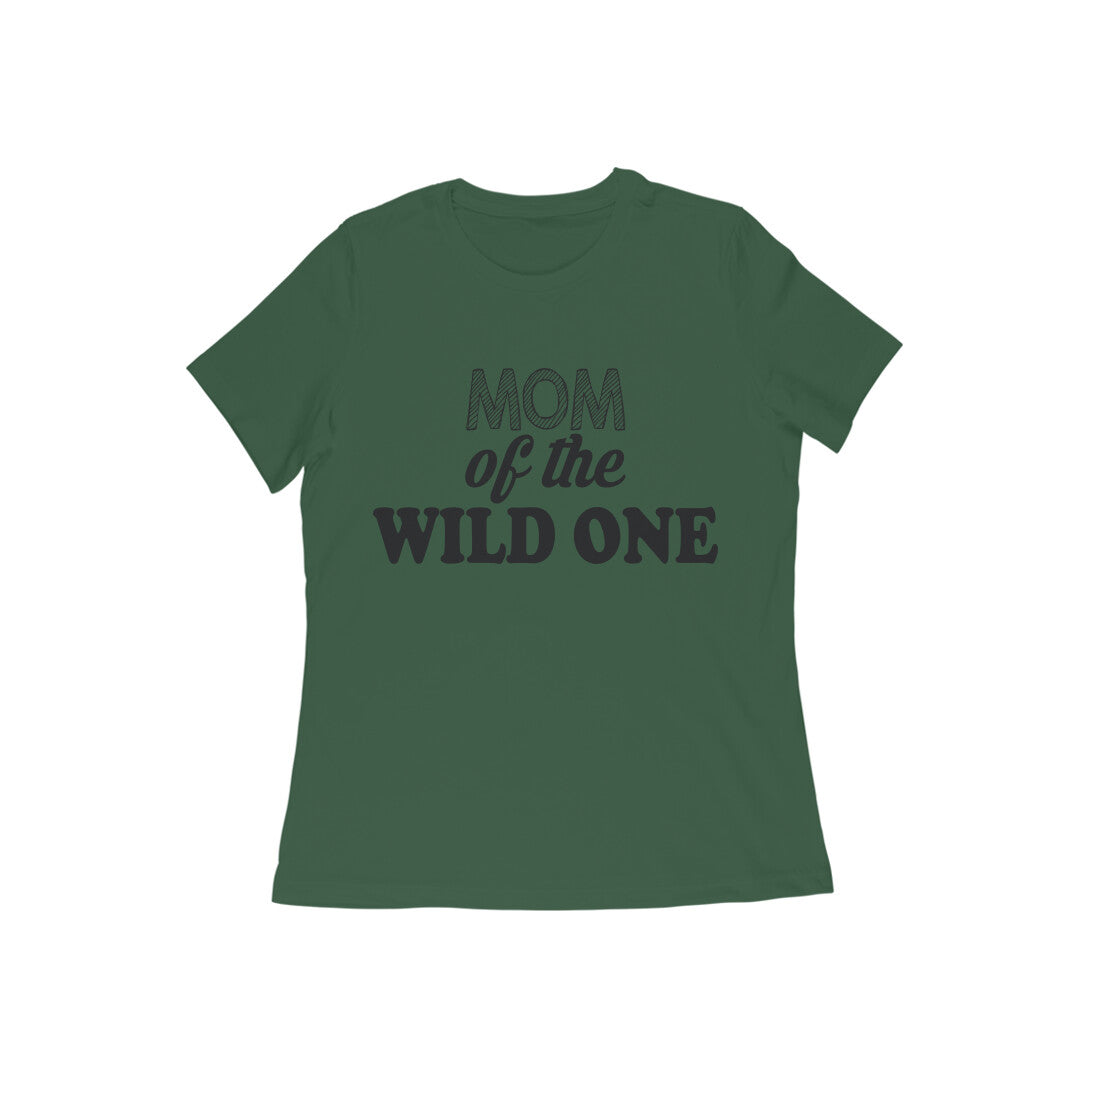 WOMEN'S ROUND NECK T-SHIRT - Mom of the wild one 1 puraidoprints